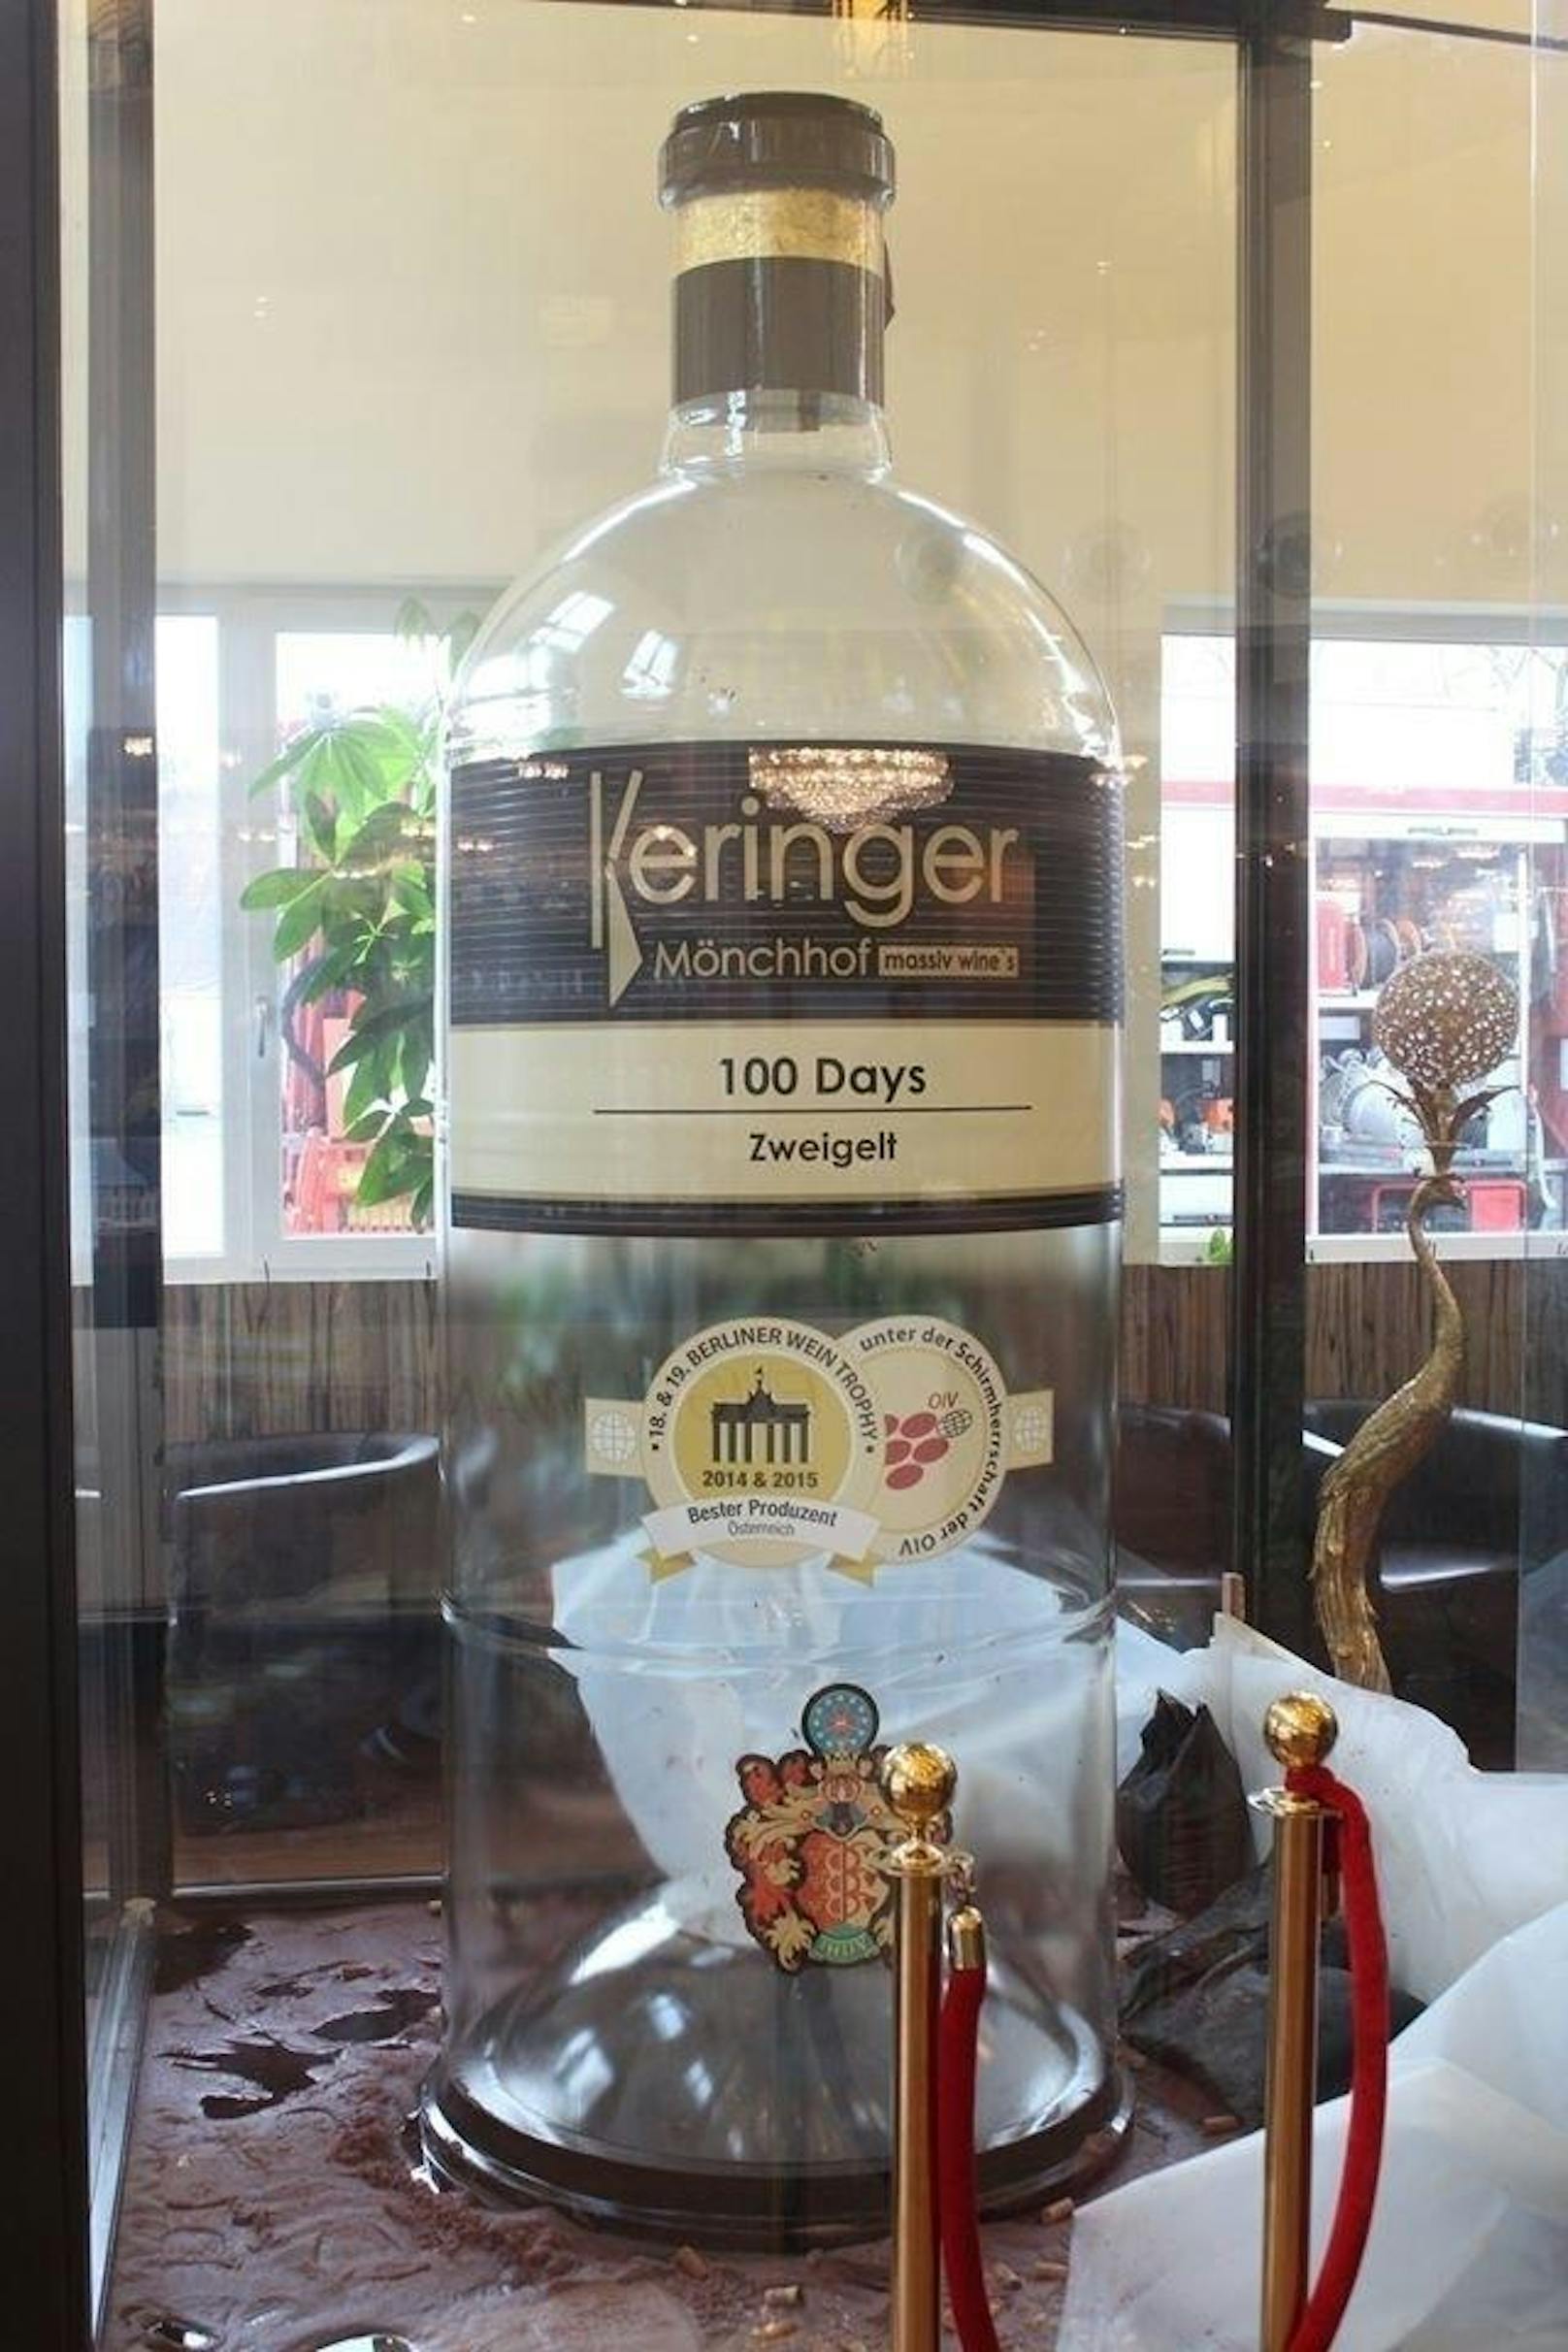 Mit der Rekordmenge von 1.590 Liter "100 Days Zweigelt 2015" befüllten Robert und Marietta Keringer aus dem burgenländischen Mönchhof (Bezirk Neusiedl) die größte gläserne Weinflasche der Welt.